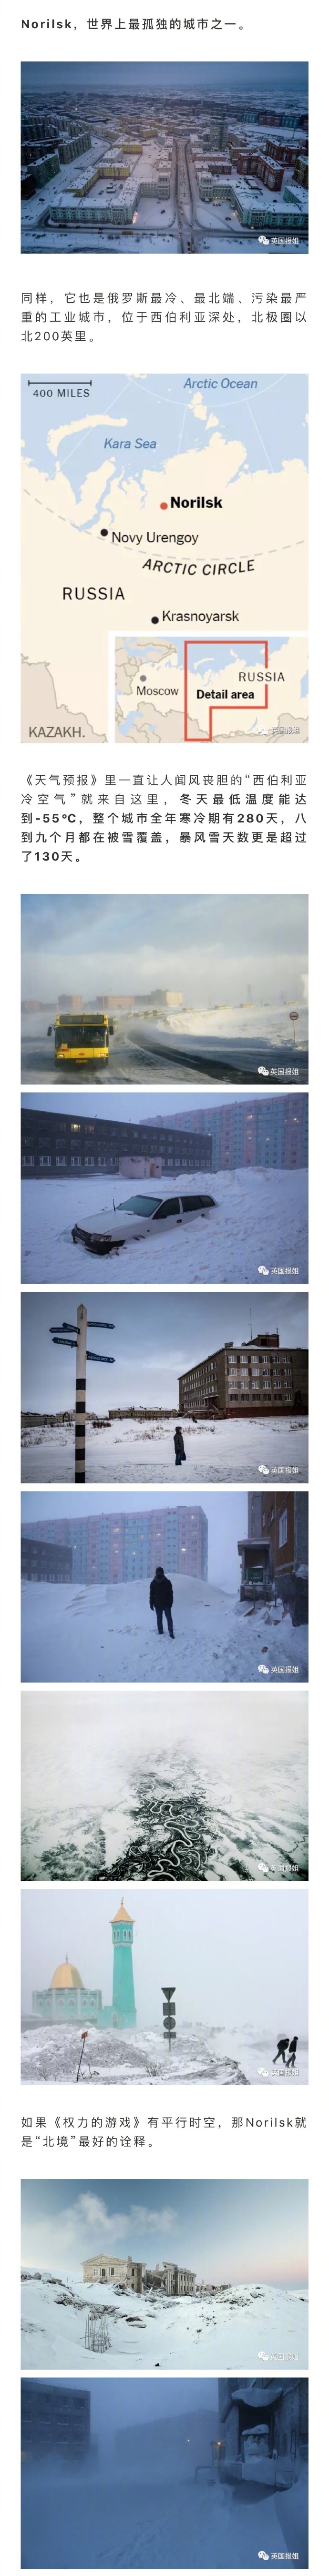 俄罗斯Norilsk是世界上最冷、最孤独、最污染的城市